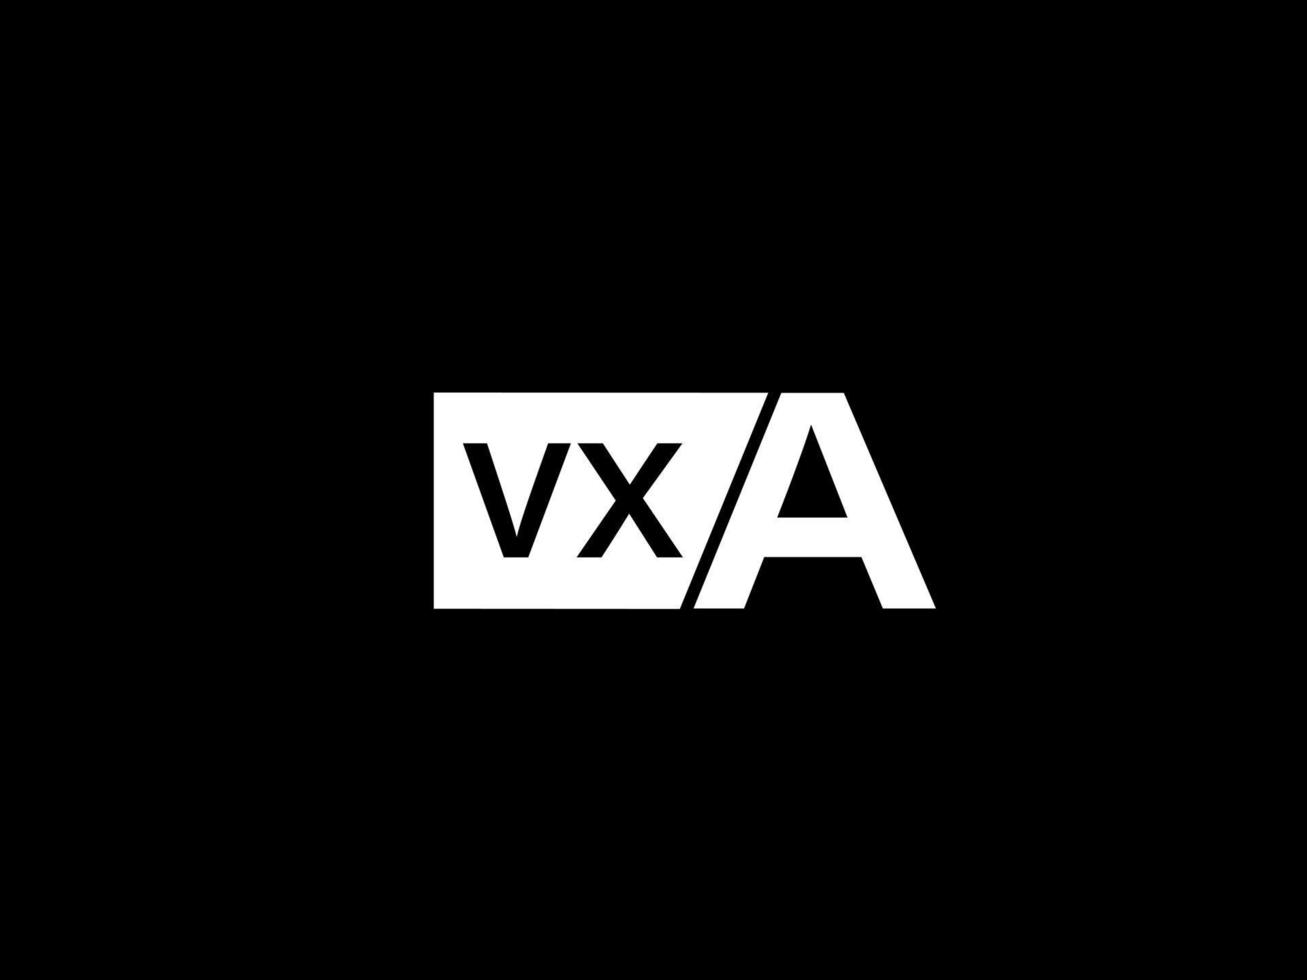 vxa-Logo und Grafikdesign Vektorgrafiken, Symbole isoliert auf schwarzem Hintergrund vektor